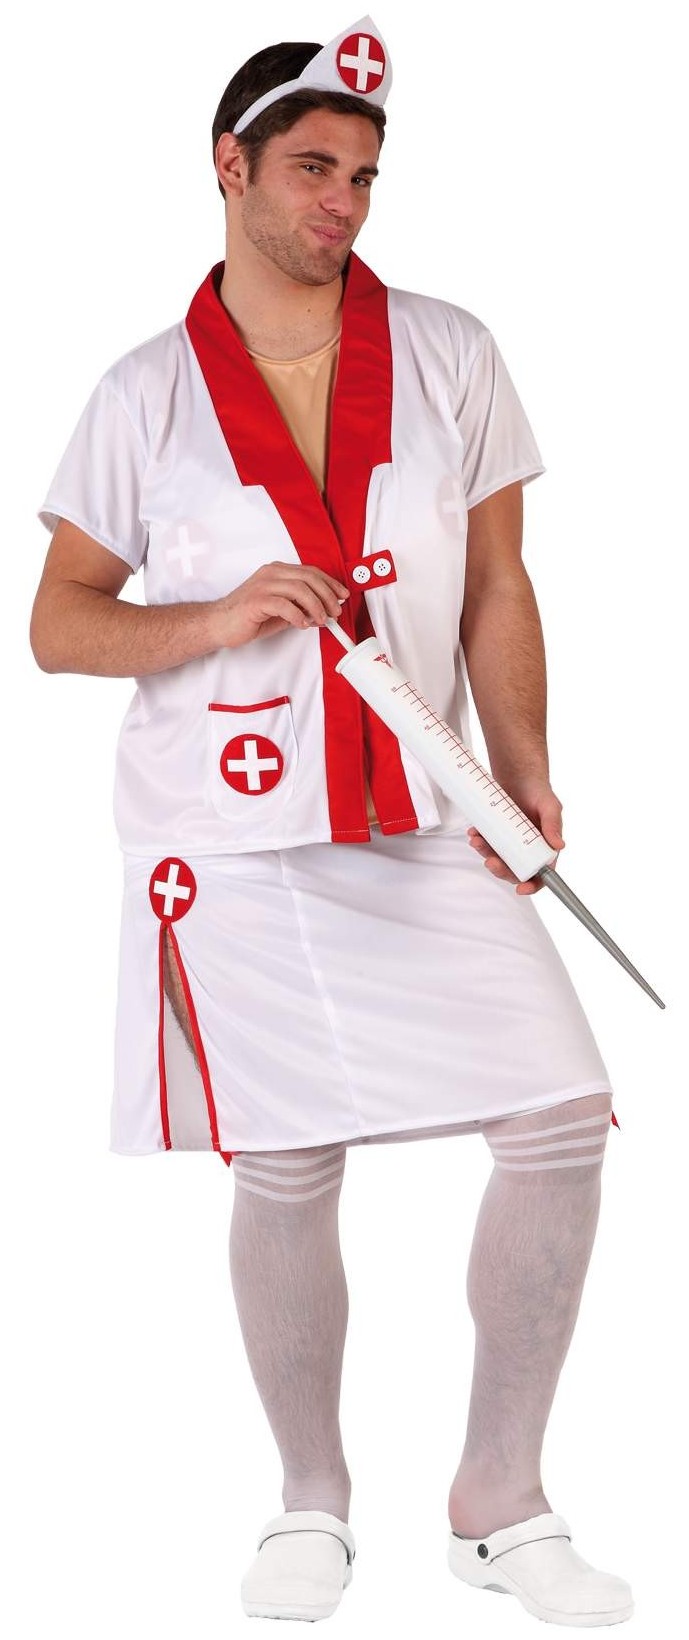 Déguisement Homme Infirmière : Vente de déguisements infirmiere et